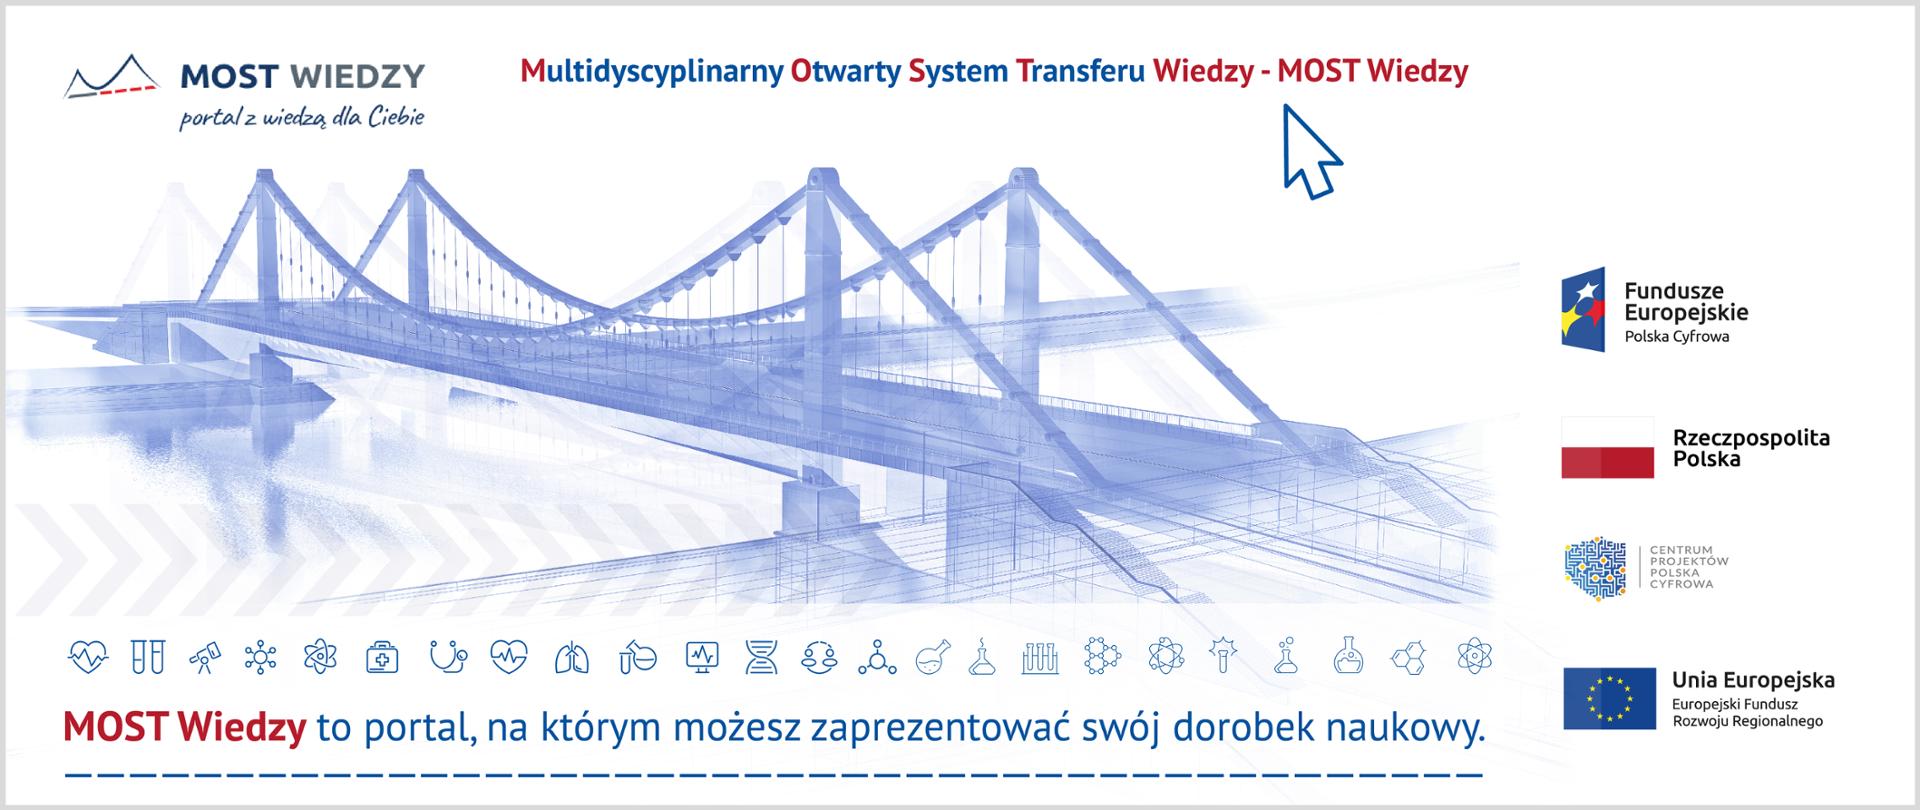 Multidyscyplinarny Otwarty System Transferu Wiedzy - MOST Wiedzy